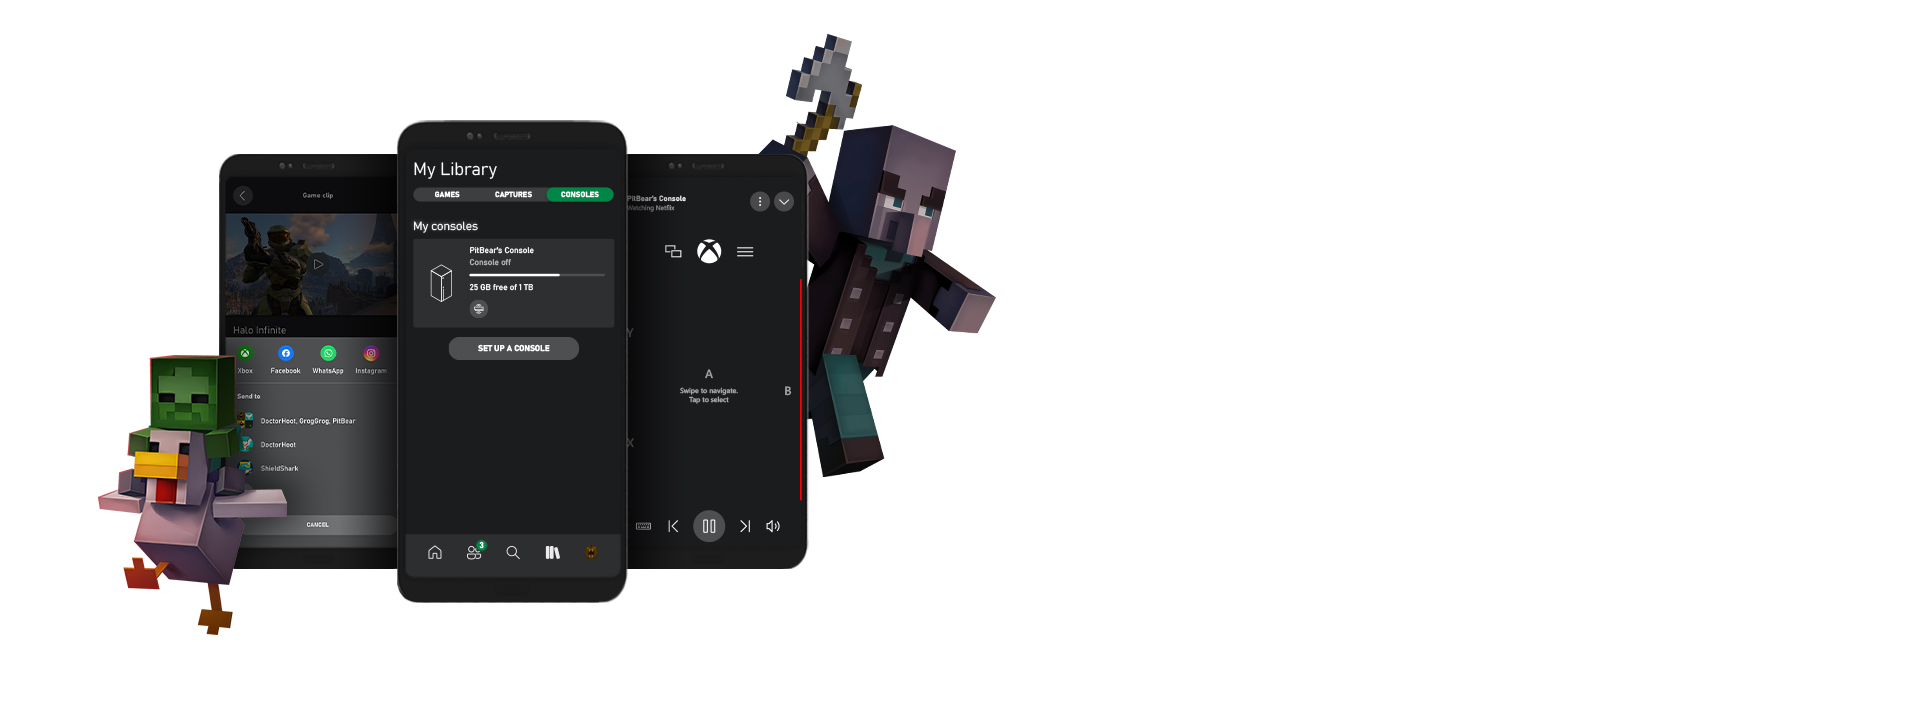 Des personnages de Minecraft encadrent des captures d’écran affichant l’interface utilisateur de l’application Xbox pour mobile.